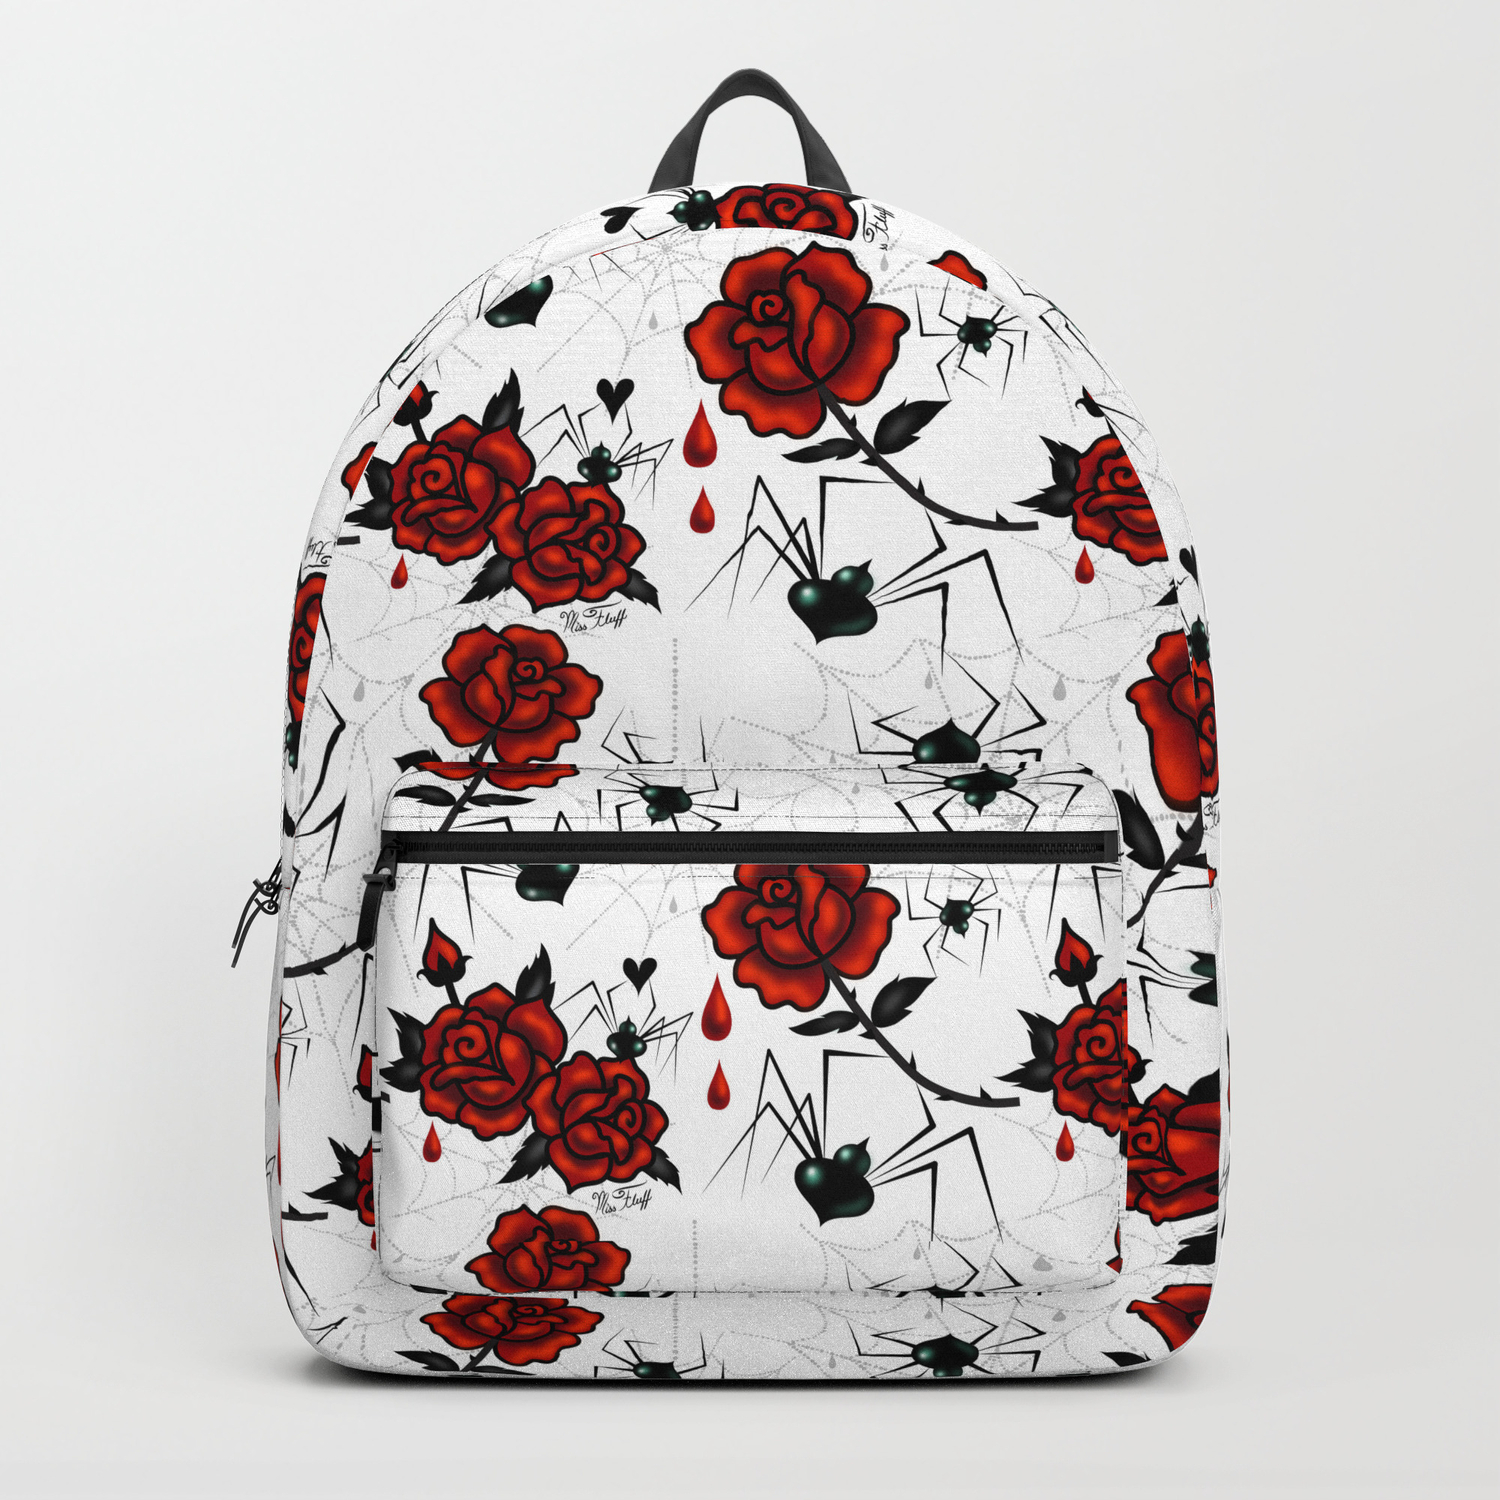 Black Widow Spider Backpack School Bag Travel Personalised Backpack